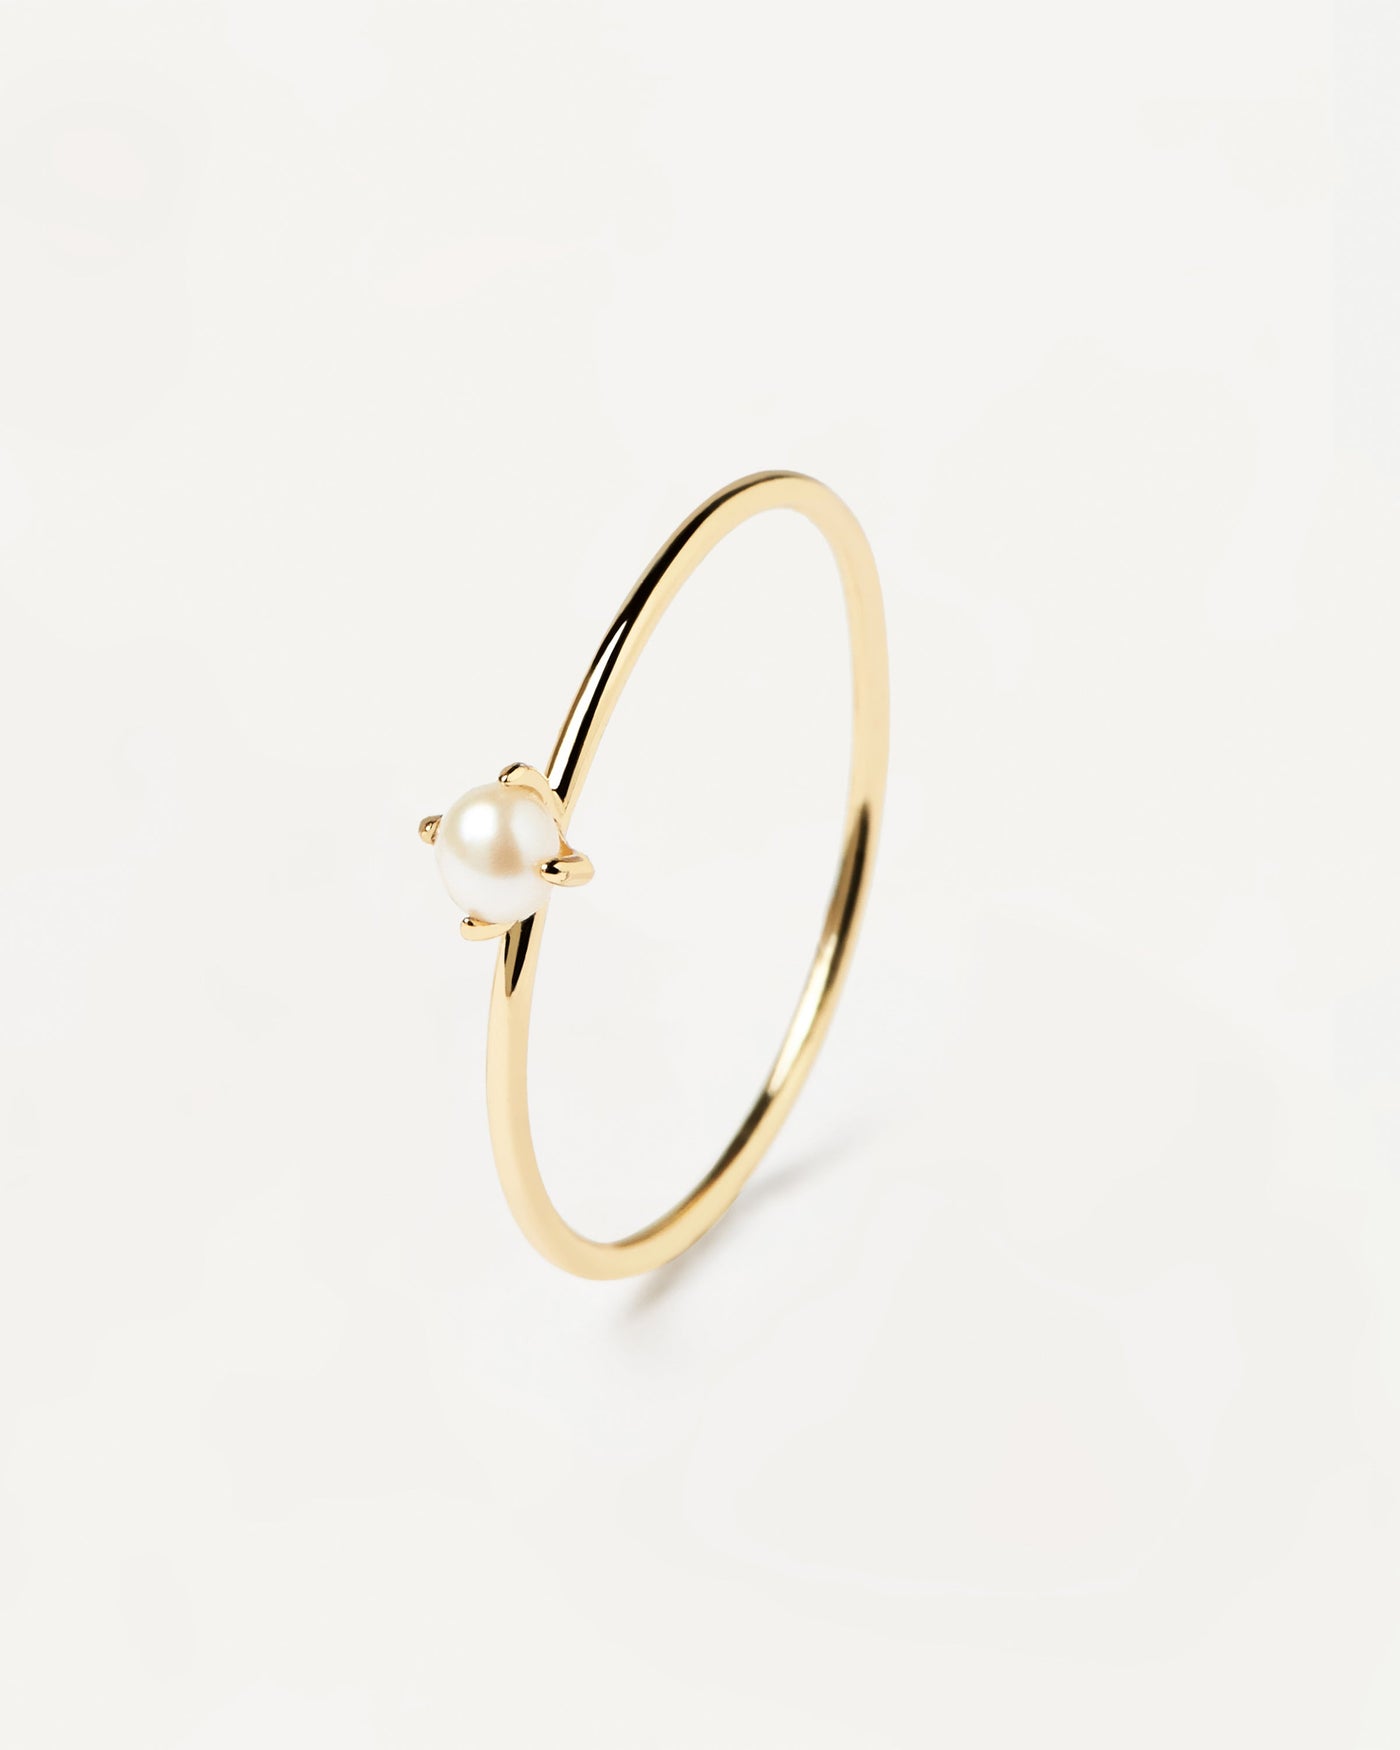 Solitary Pearl Ringe. natürliche perle in zackenfassung auf einem dünnen ring aus 18k vergoldetem 925er silber. Erhalten Sie die neuesten Produkte von PDPAOLA. Geben Sie Ihre Bestellung sicher auf und erhalten Sie diesen Bestseller.